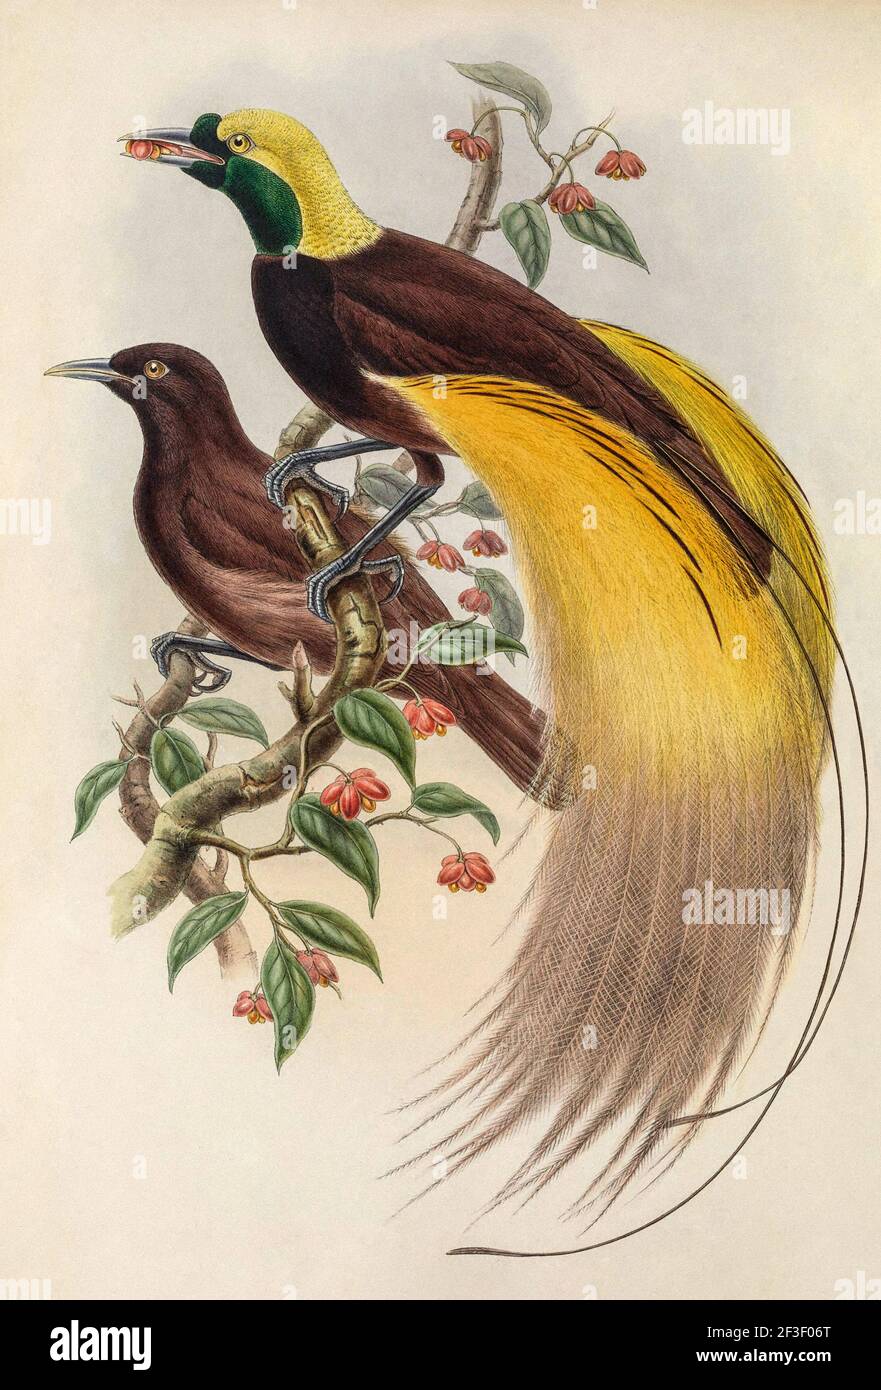 Illustration de la lithographie couleur du XIXe siècle. Grand oiseau de paradis (apoda paradisaea) par John Gould et W. Hart 1875 Banque D'Images